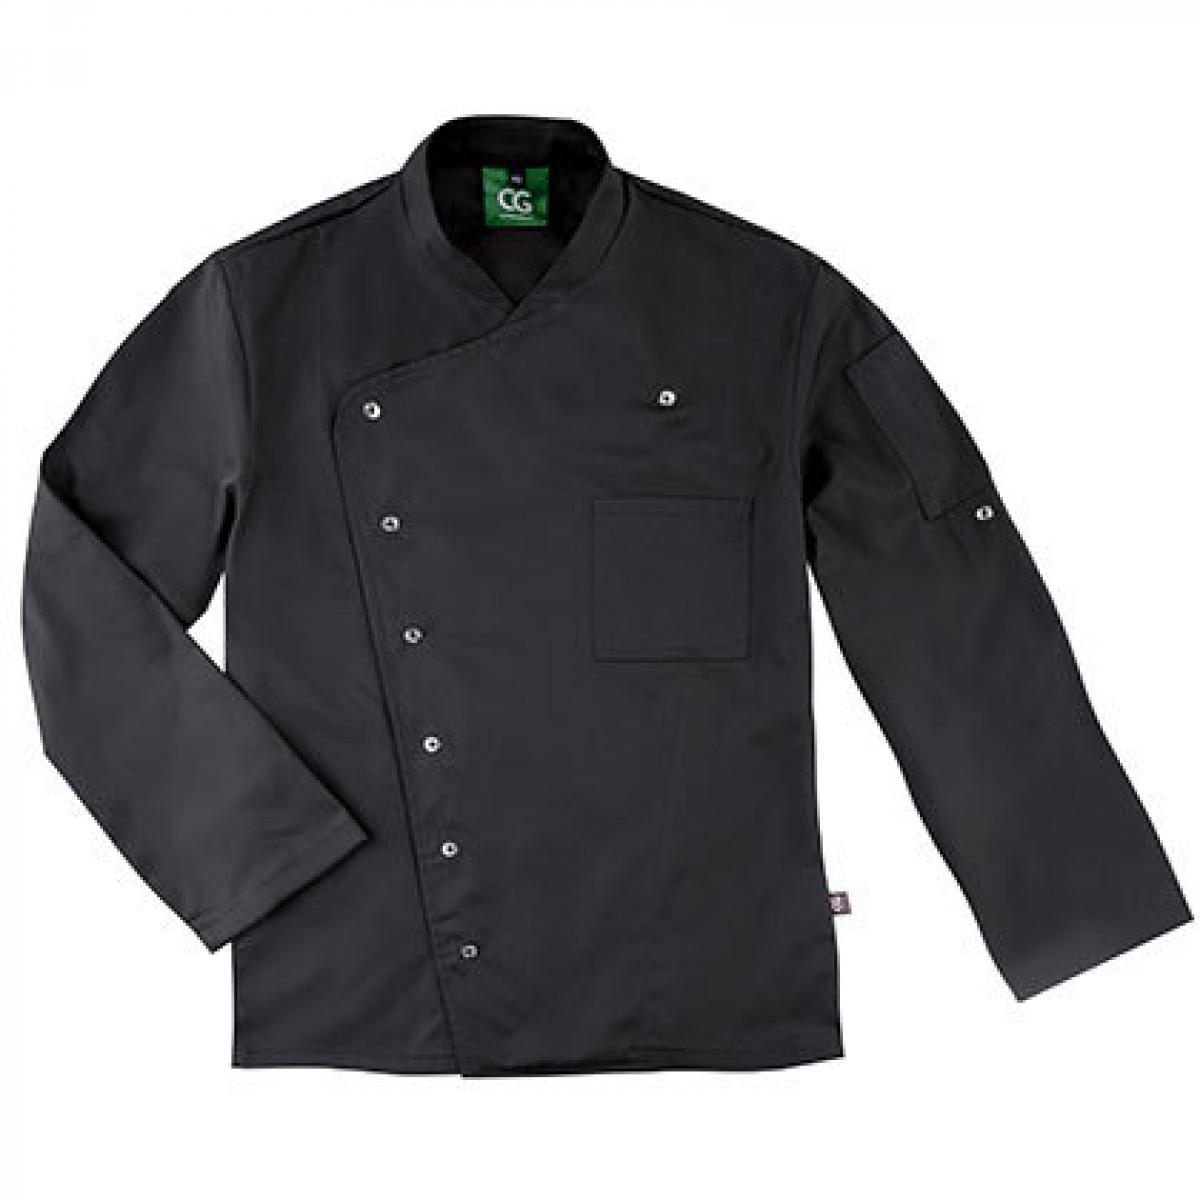 Hersteller: CG Workwear Herstellernummer: 03100-44 Artikelbezeichnung: Men´s Chef Jacket Turin GreeNature waschbar bis 95 °C Farbe: Black